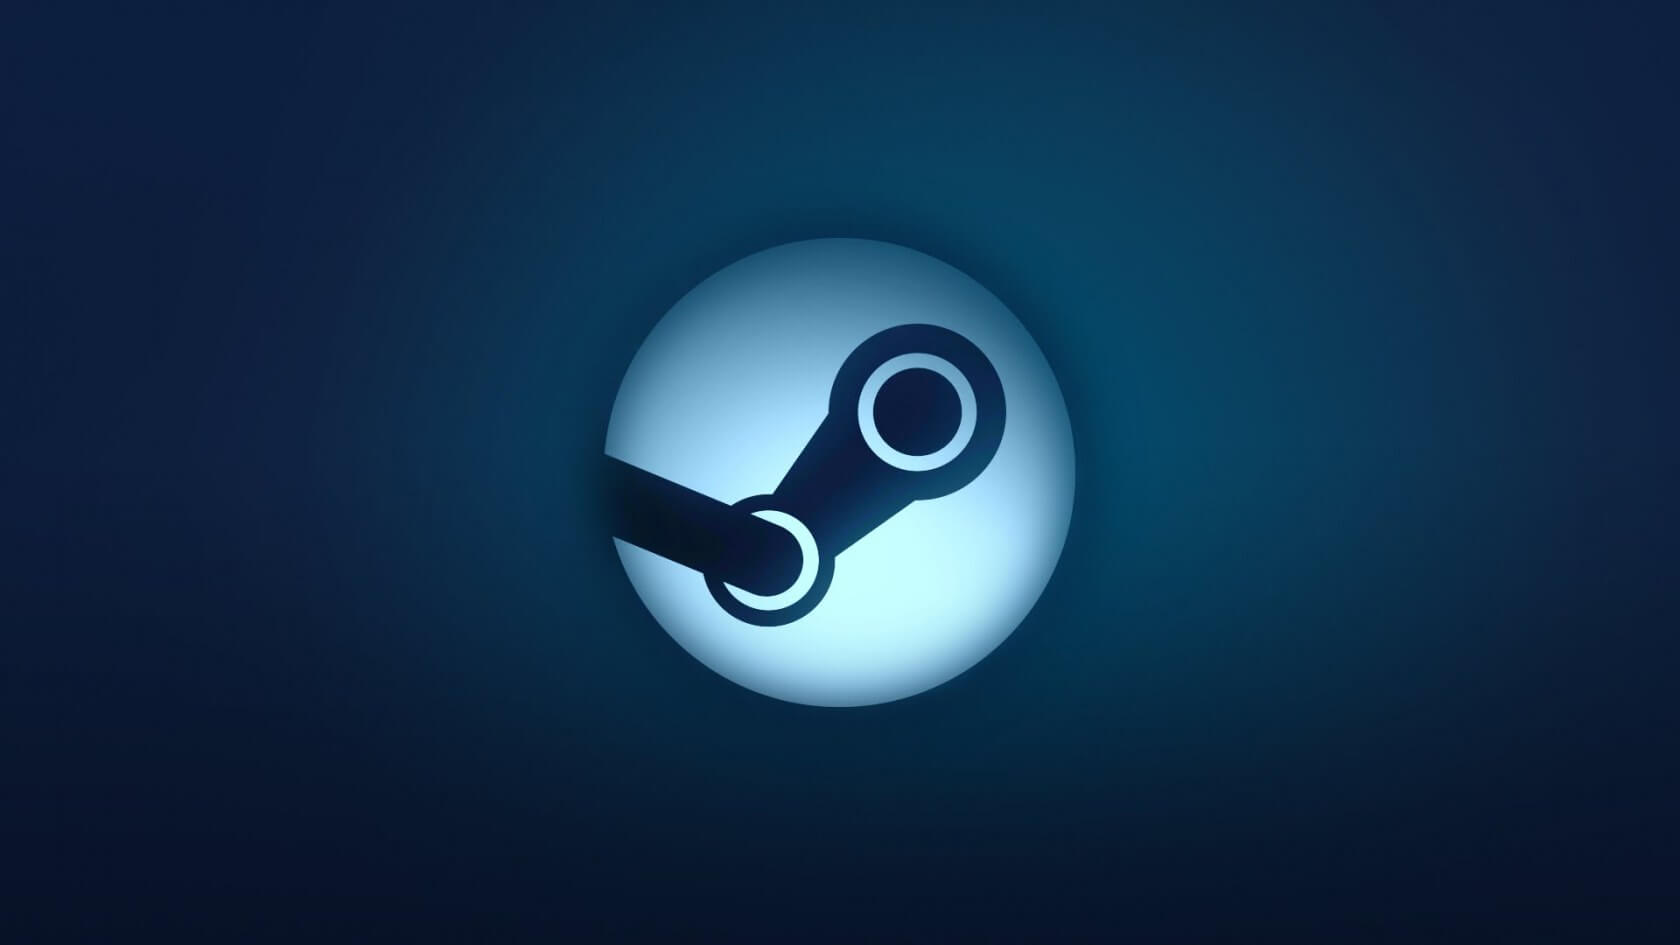 Steam no Linux permanece em torno de 0,9% Marketshare